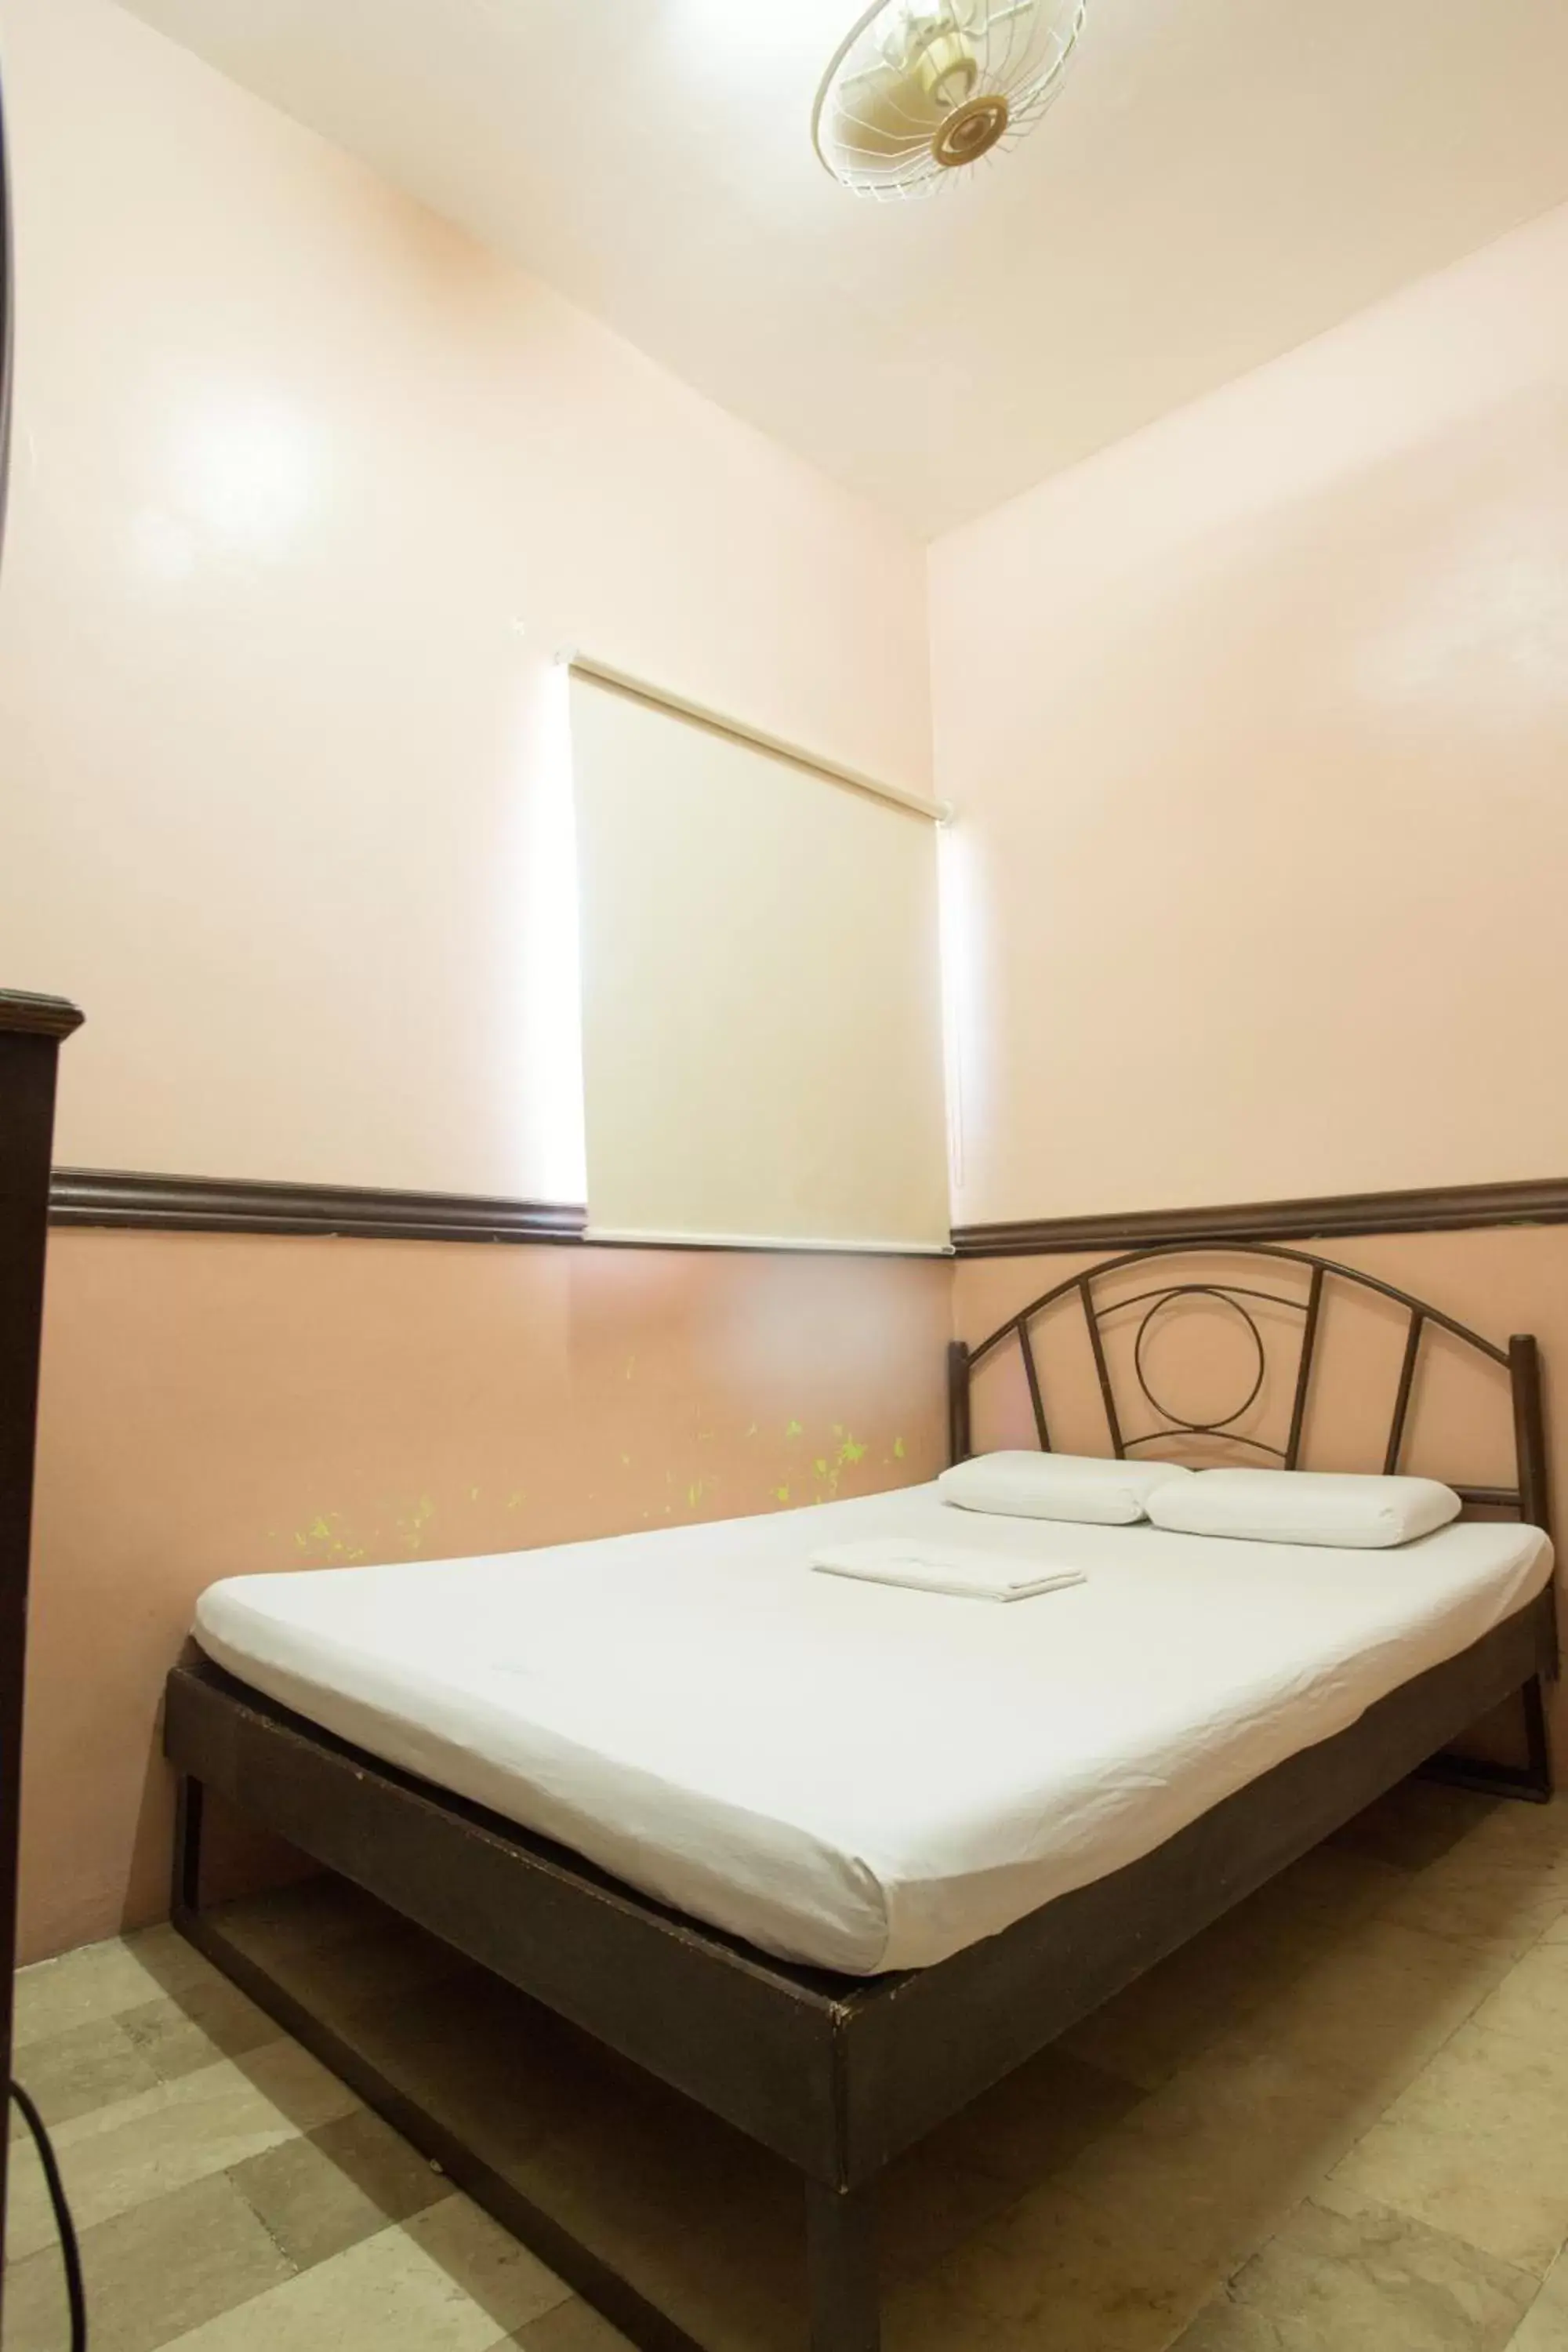 Bed, Room Photo in GV Hotel - Masbate